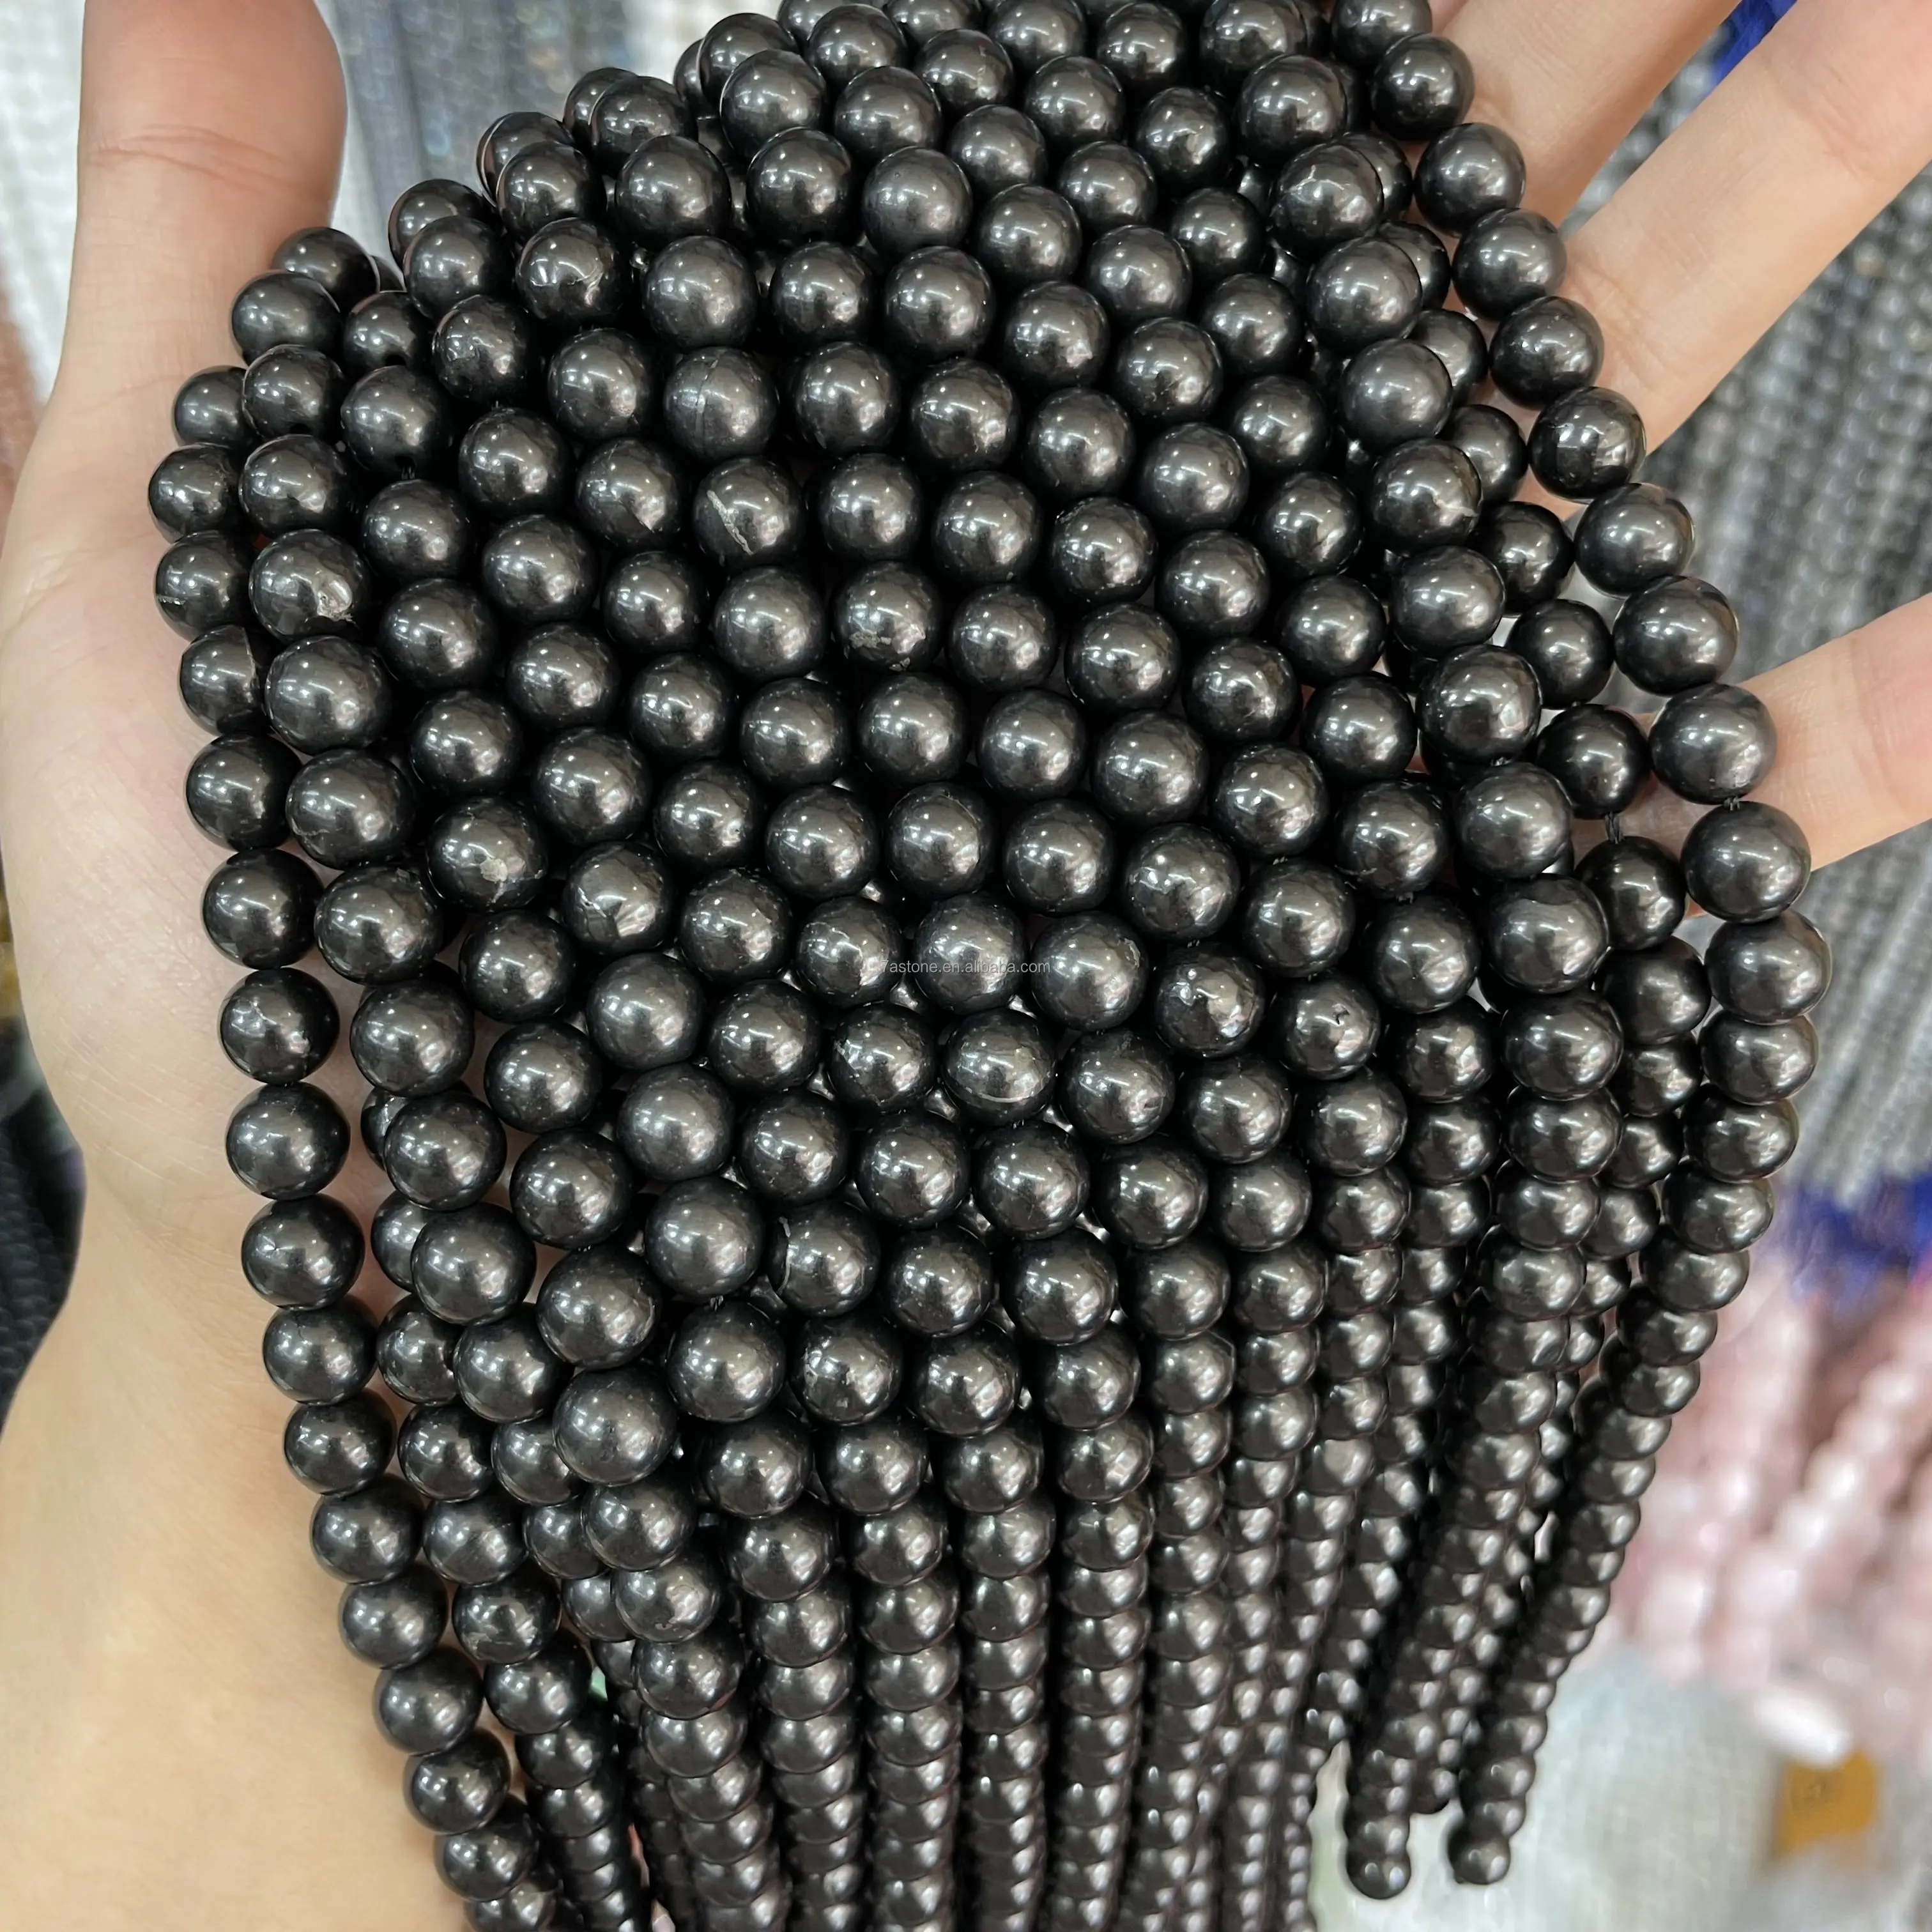 Taidian — pierres kungite naturelles russes, perles rondes et amples de 6/8/10mm, livraison gratuite